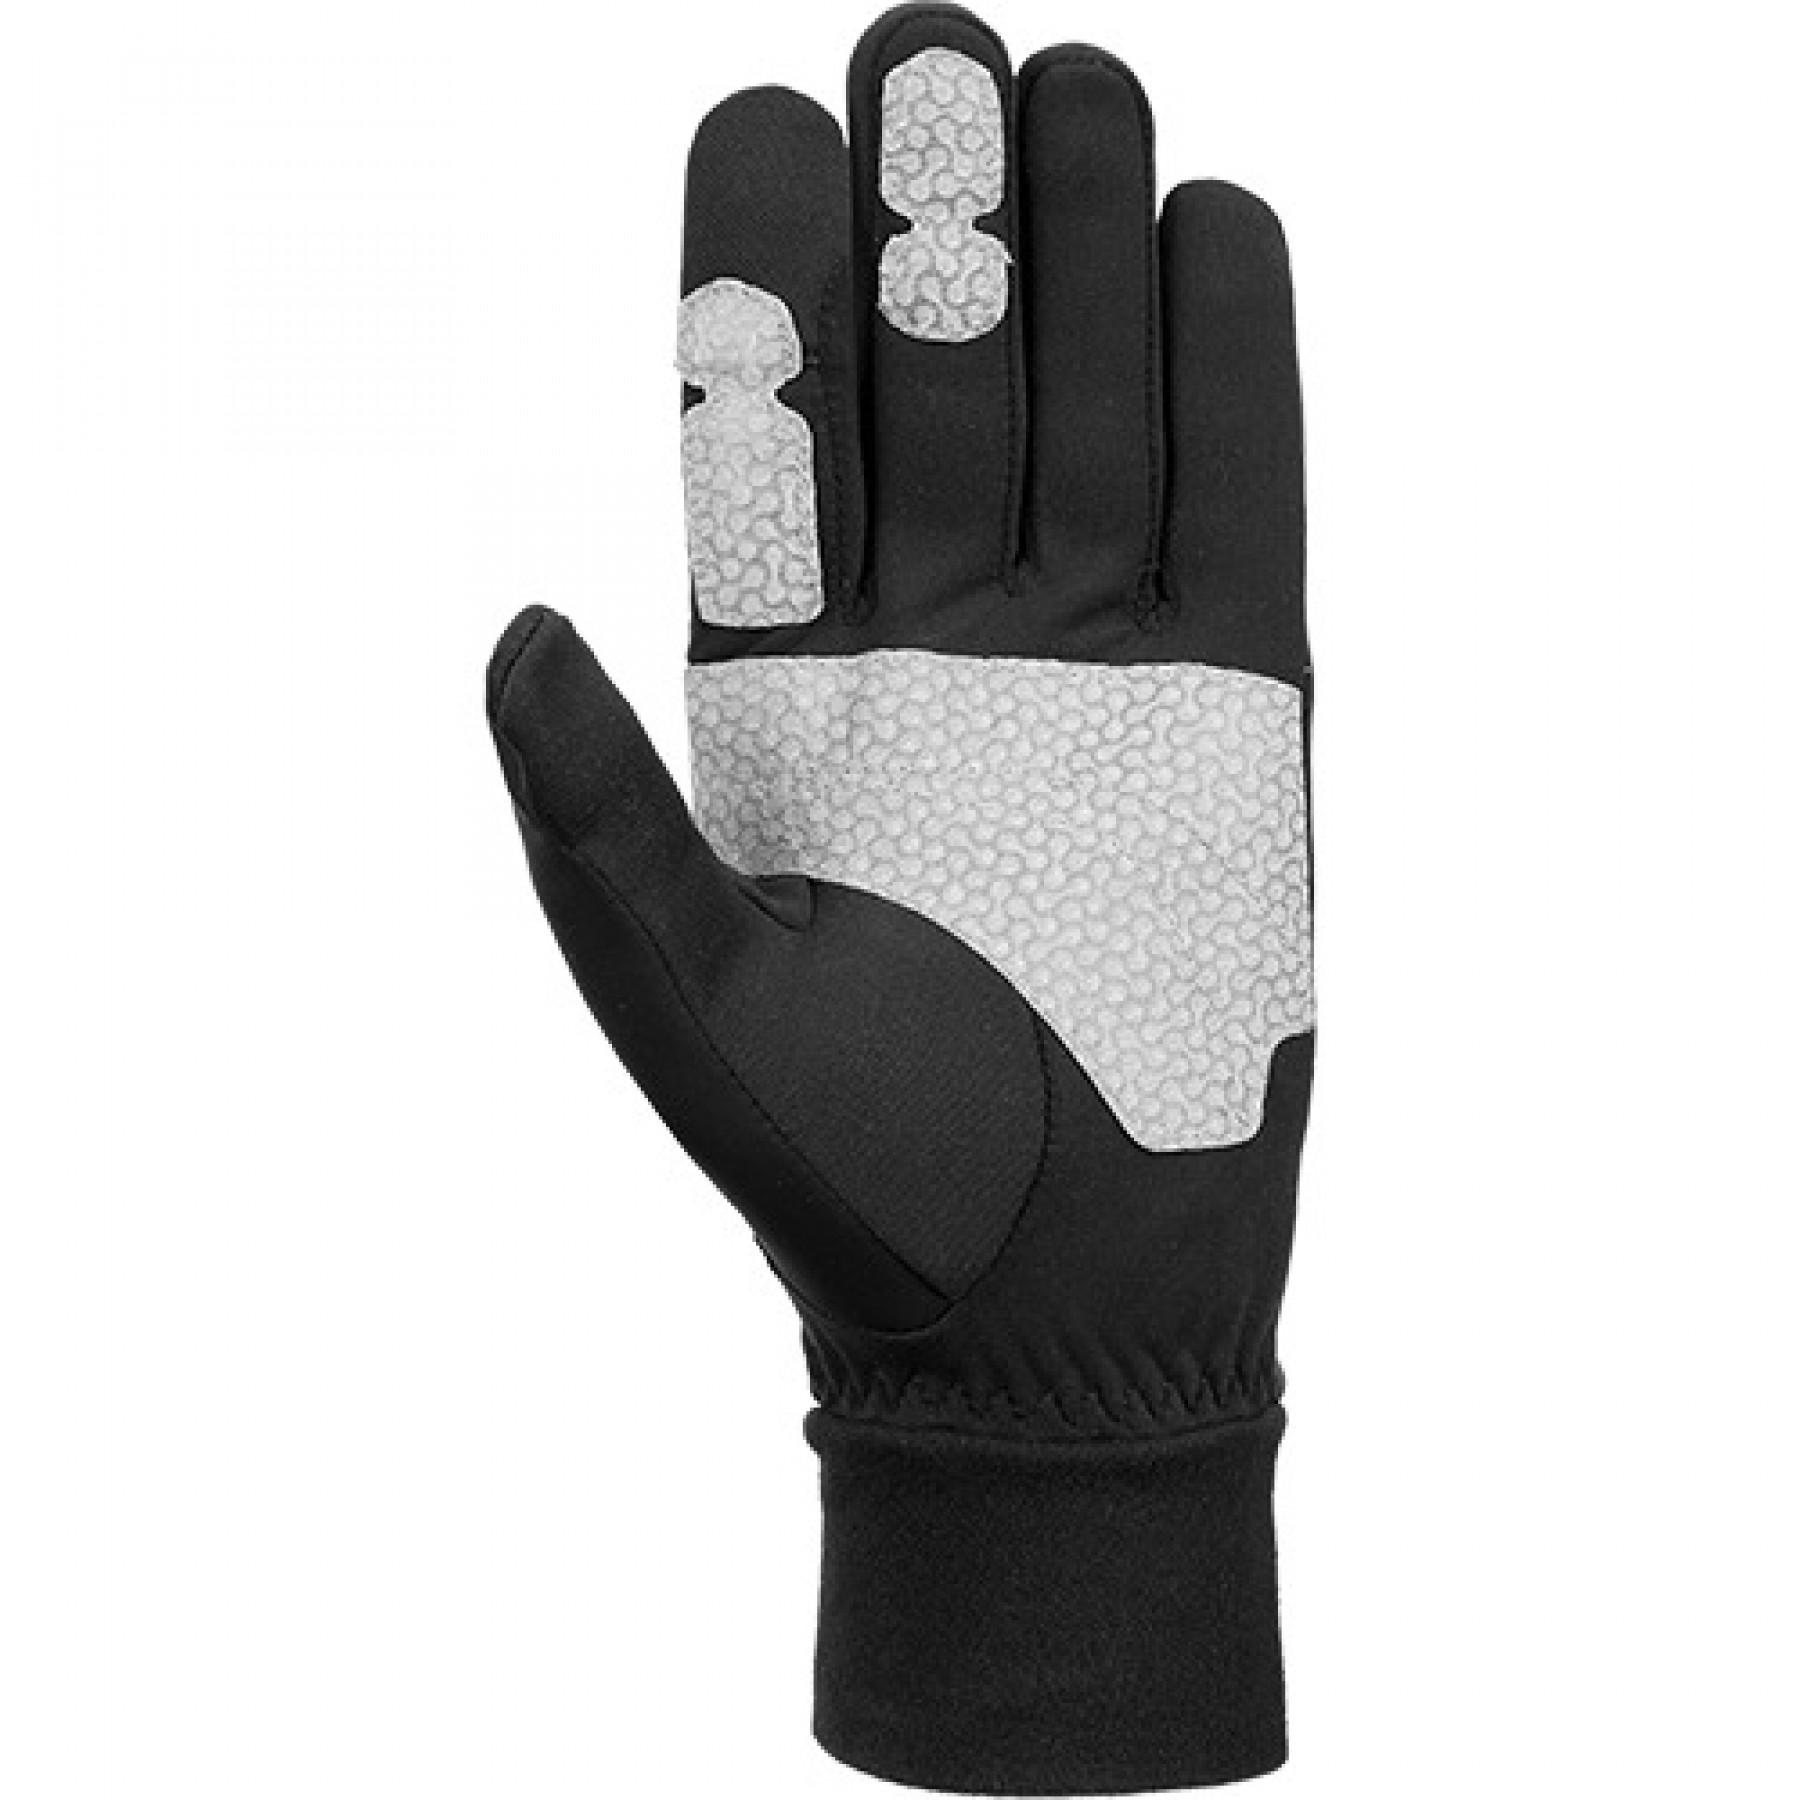 Gloves Reusch Hike & Ride Touch-tec